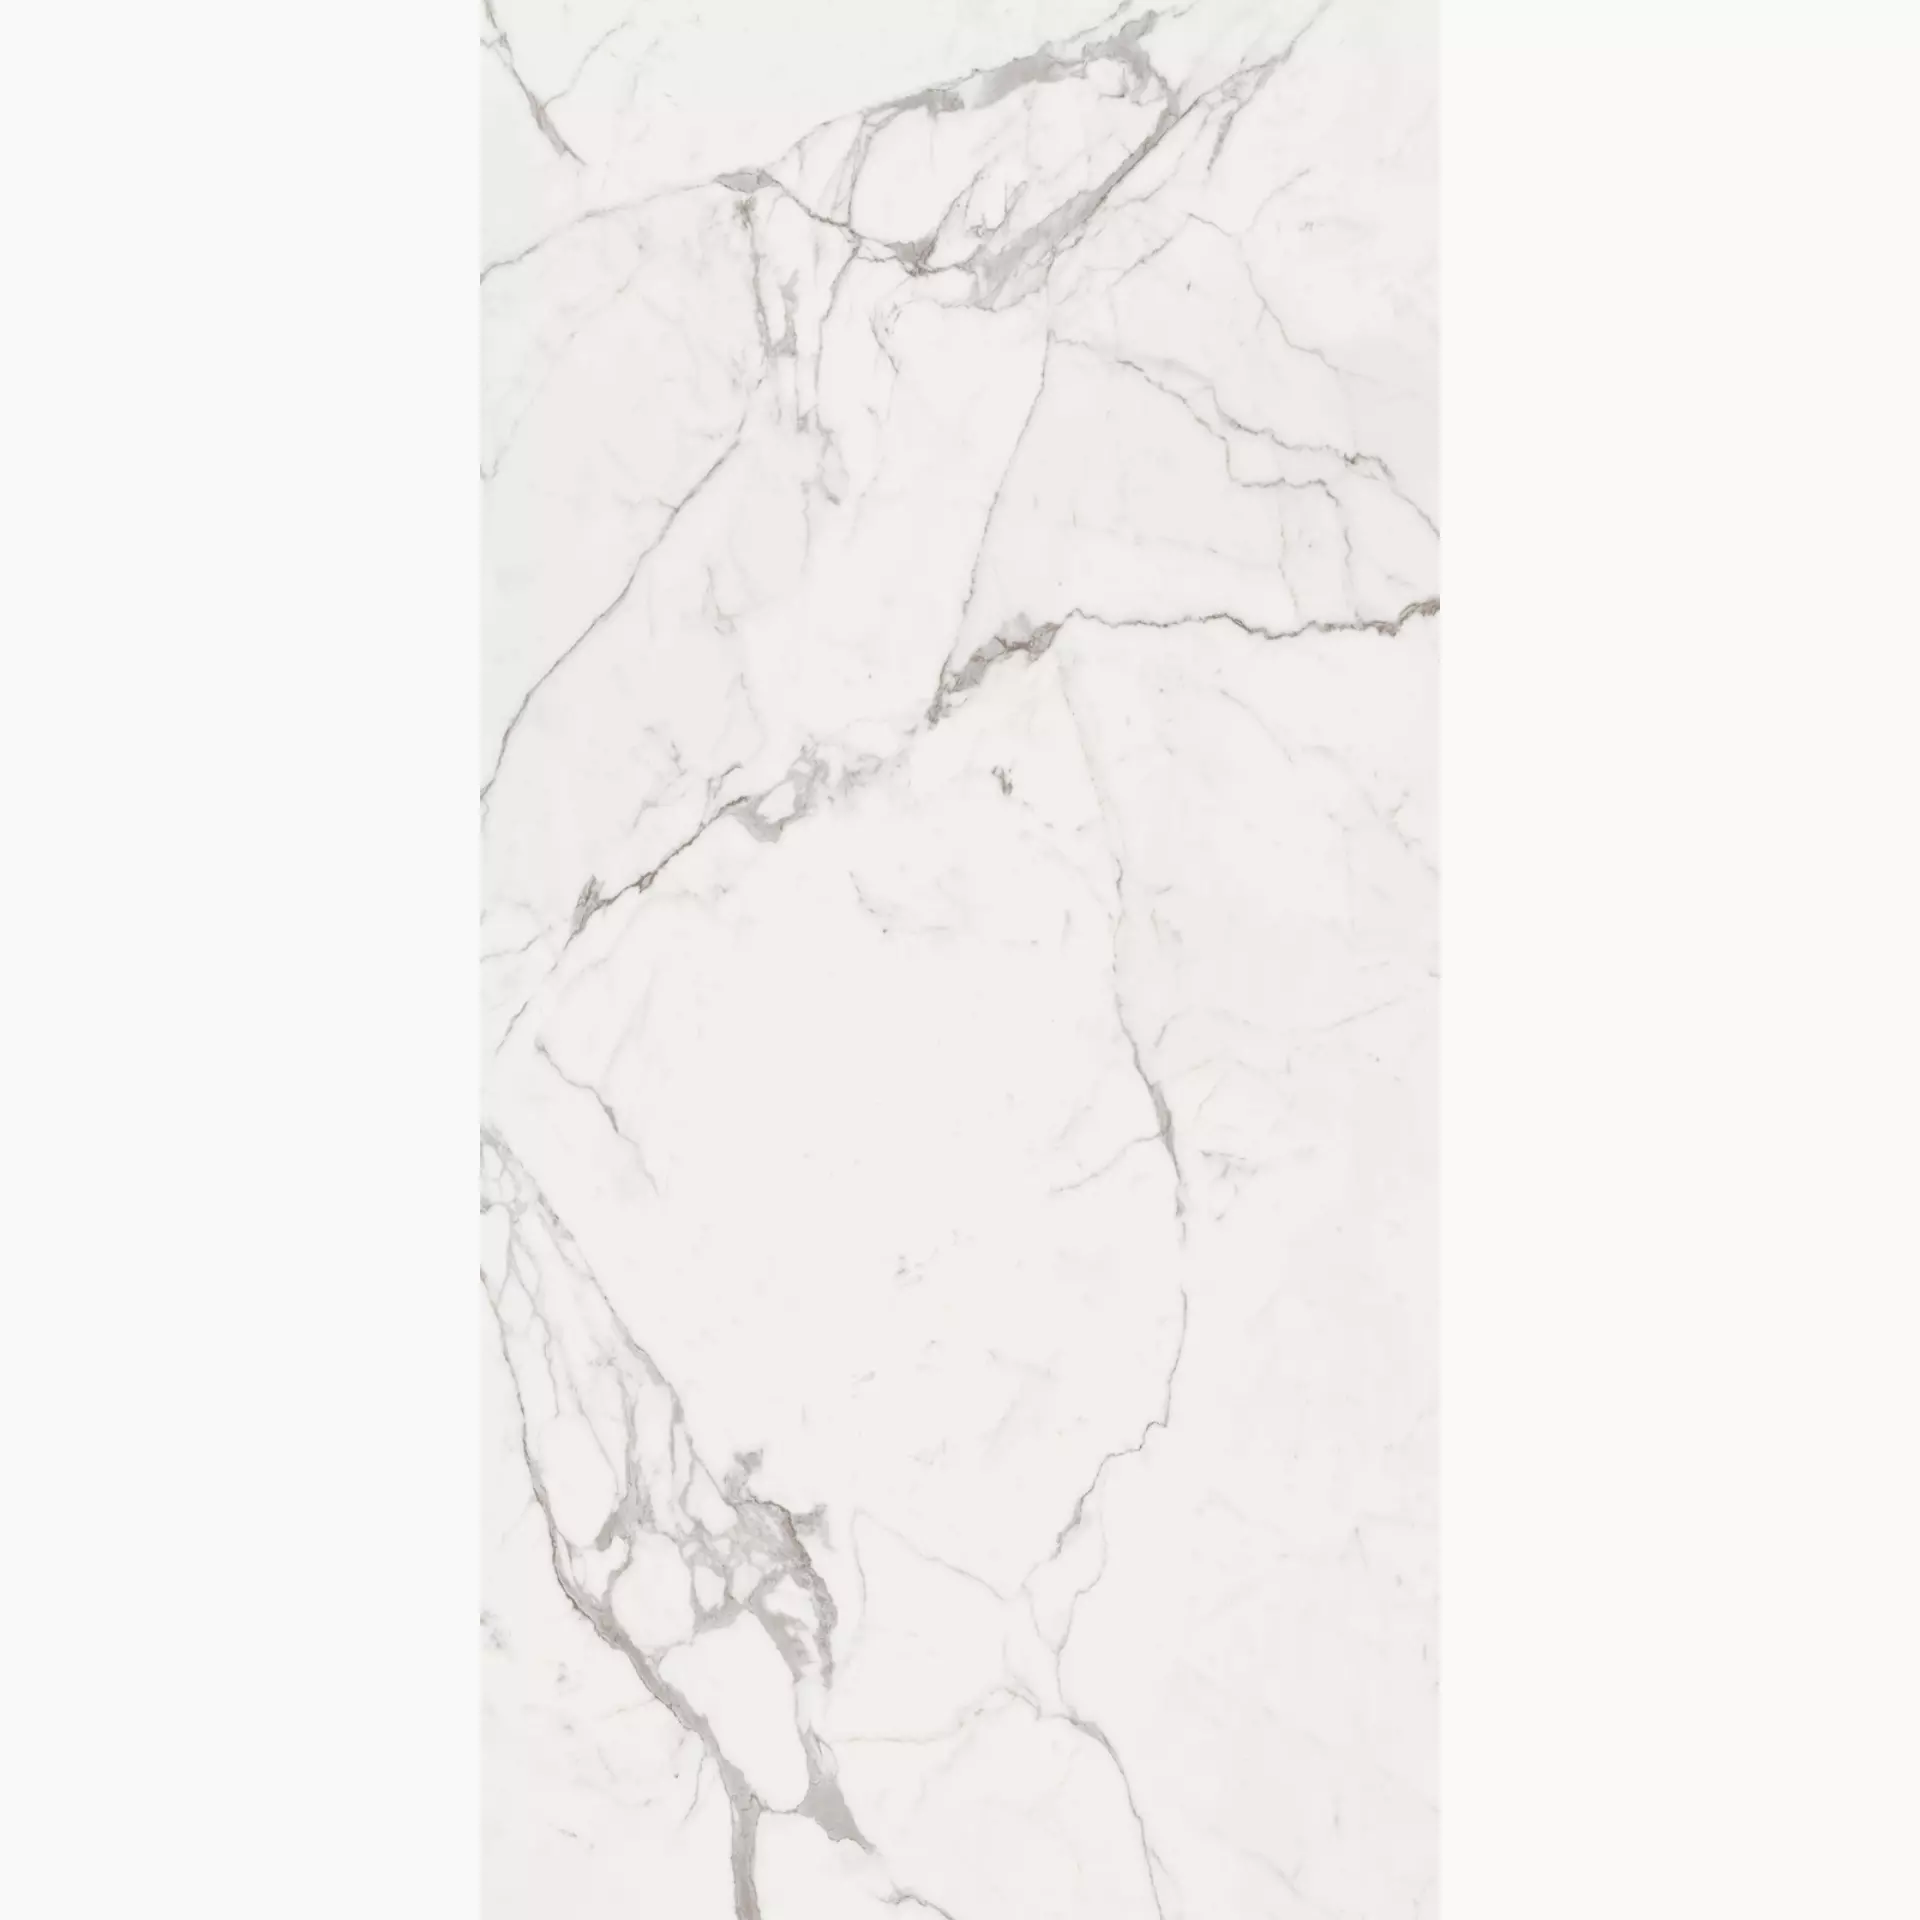 Bodenfliese,Wandfliese Marazzi Grande Marble Look Statuario Naturale – Matt Statuario MR09 matt natur 120x240cm Book Match A rektifiziert 6mm